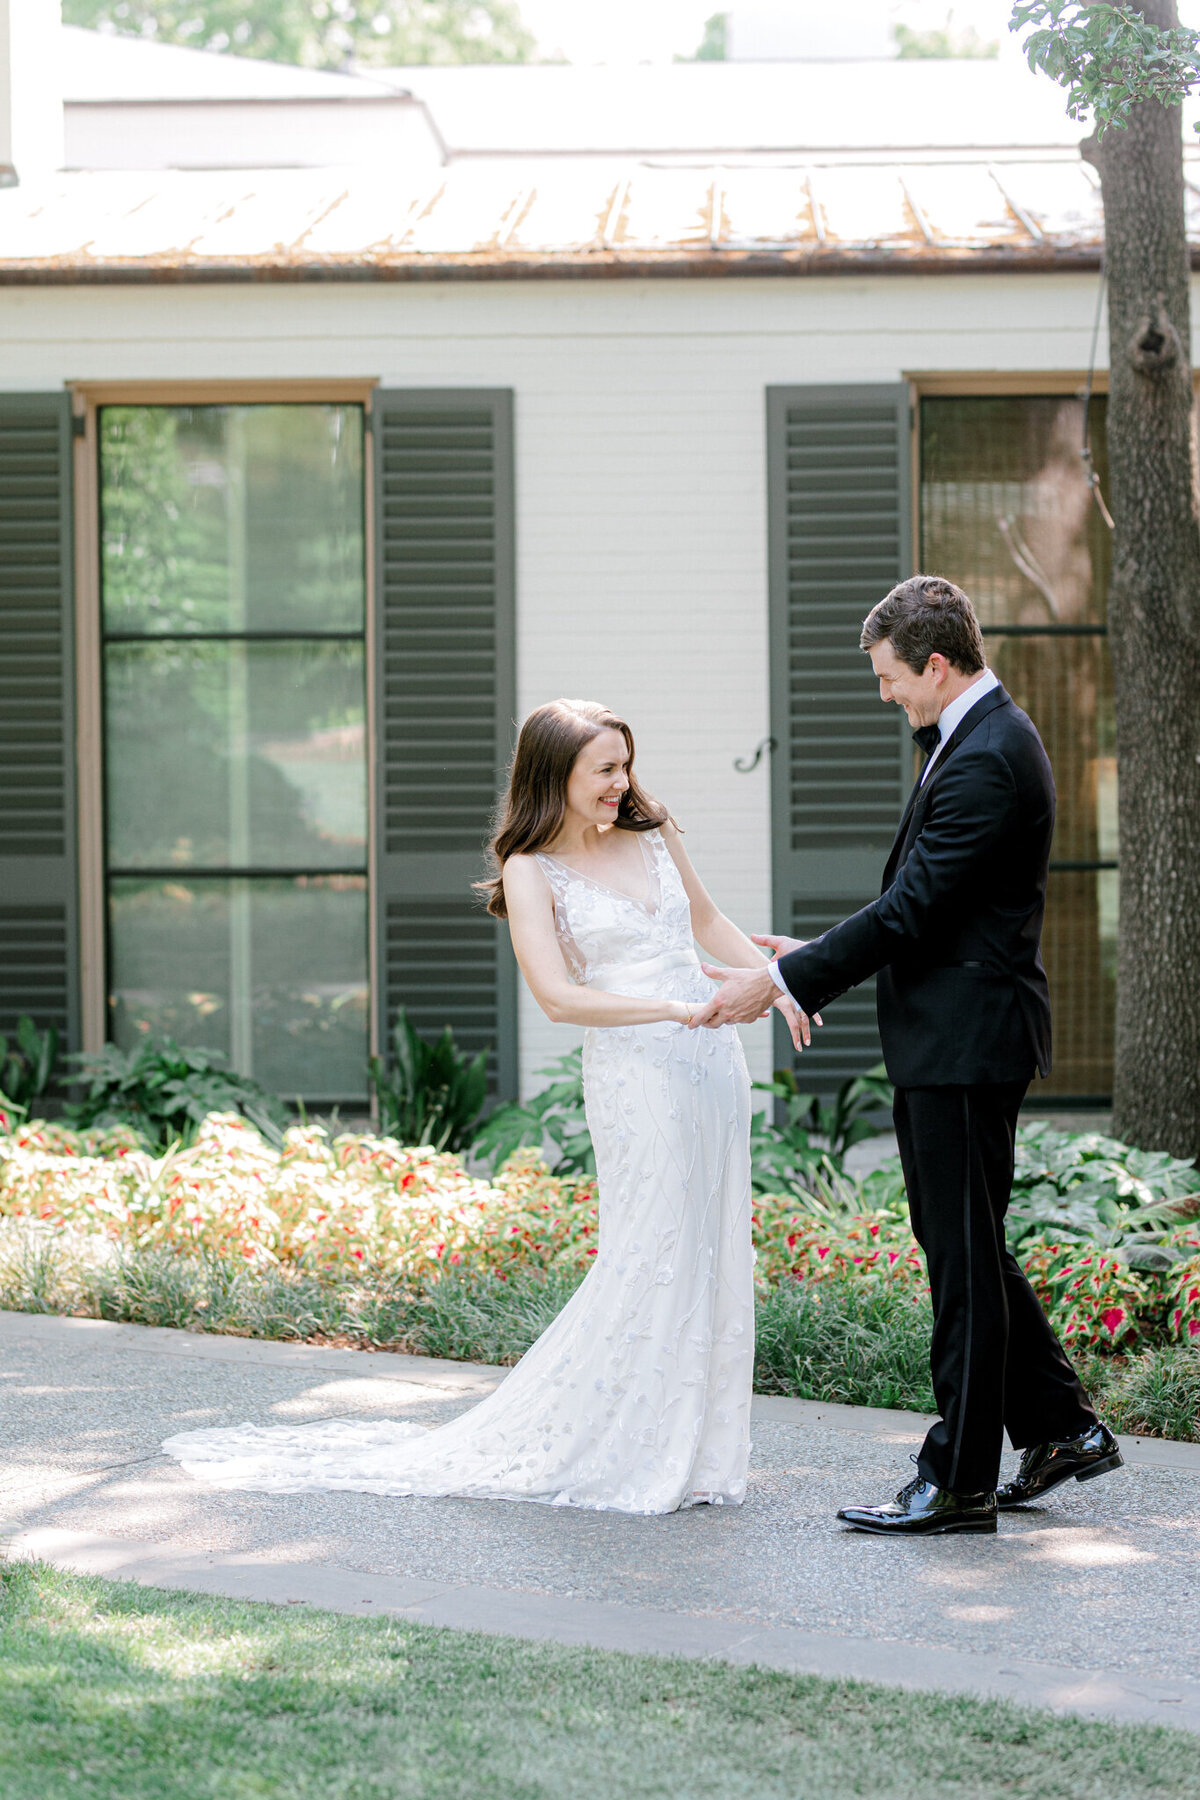 Gena & Matt's Wedding at the Dallas Arboretum | Dallas Wedding Photographer | Sami Kathryn Photography-66